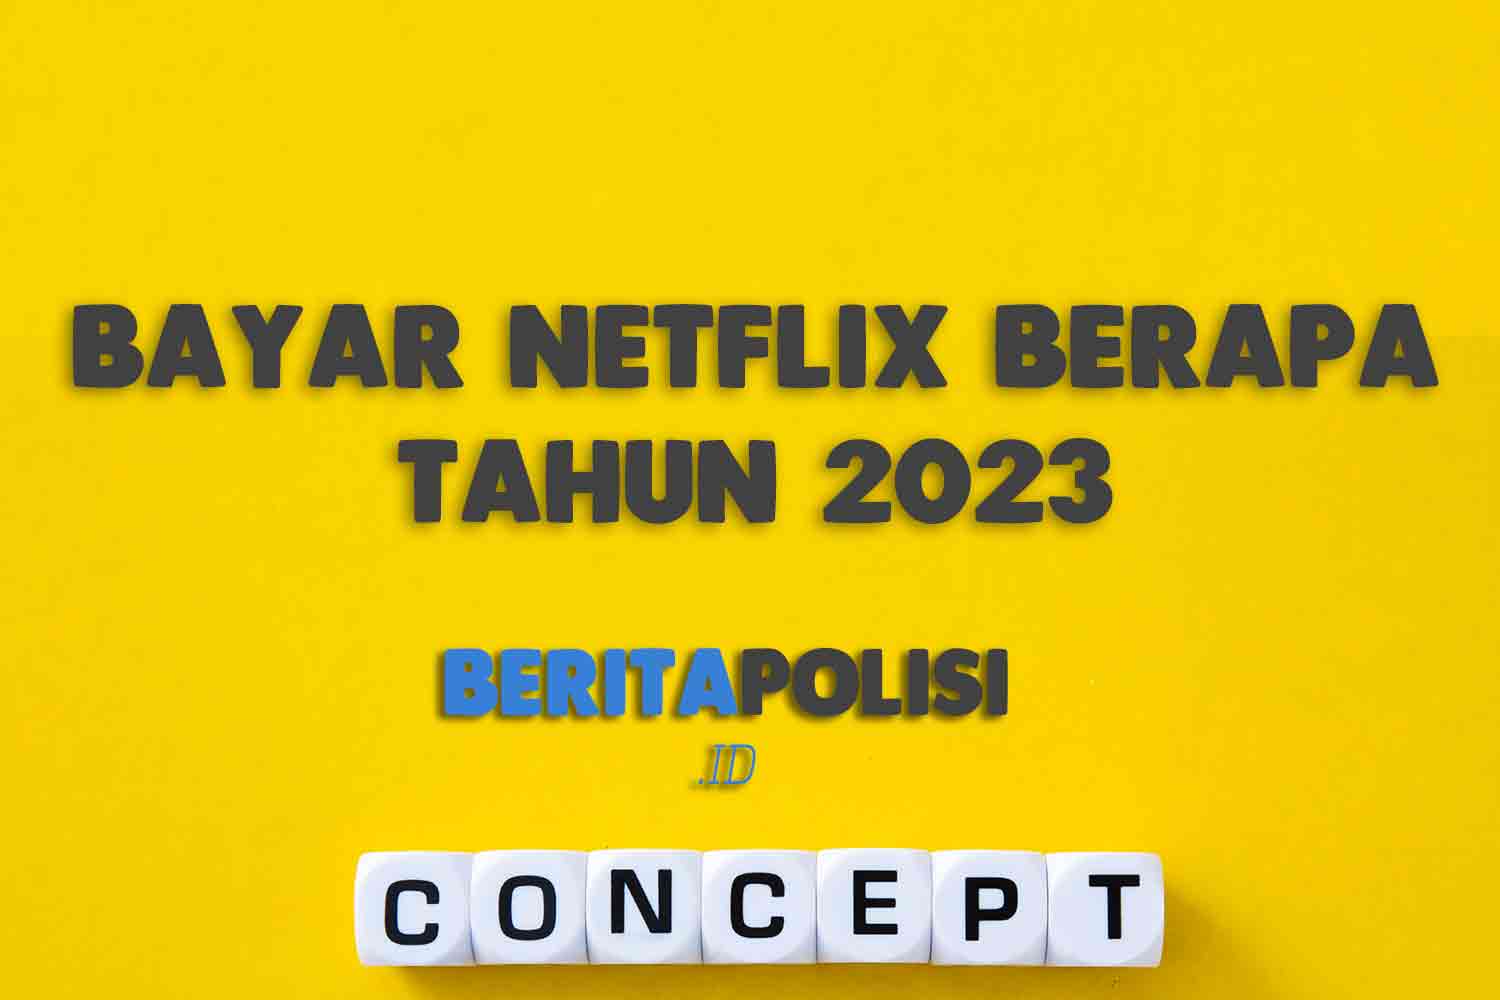 Bayar Netflix Berapa Tahun 2023